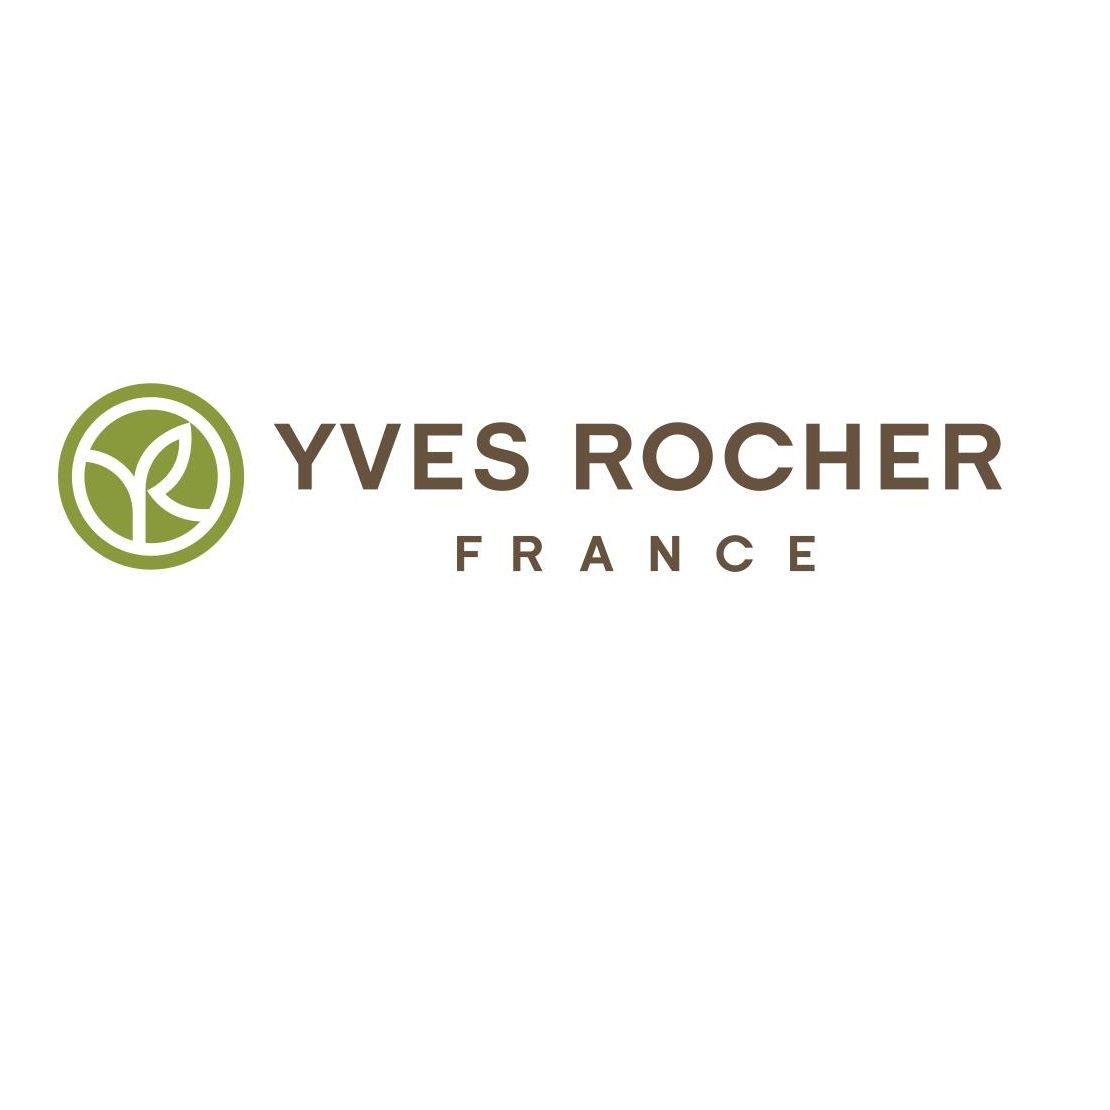 Mỹ phẩm Yves Rocher: Thương hiệu mỹ phẩm thiên nhiên hàng đầu của Pháp